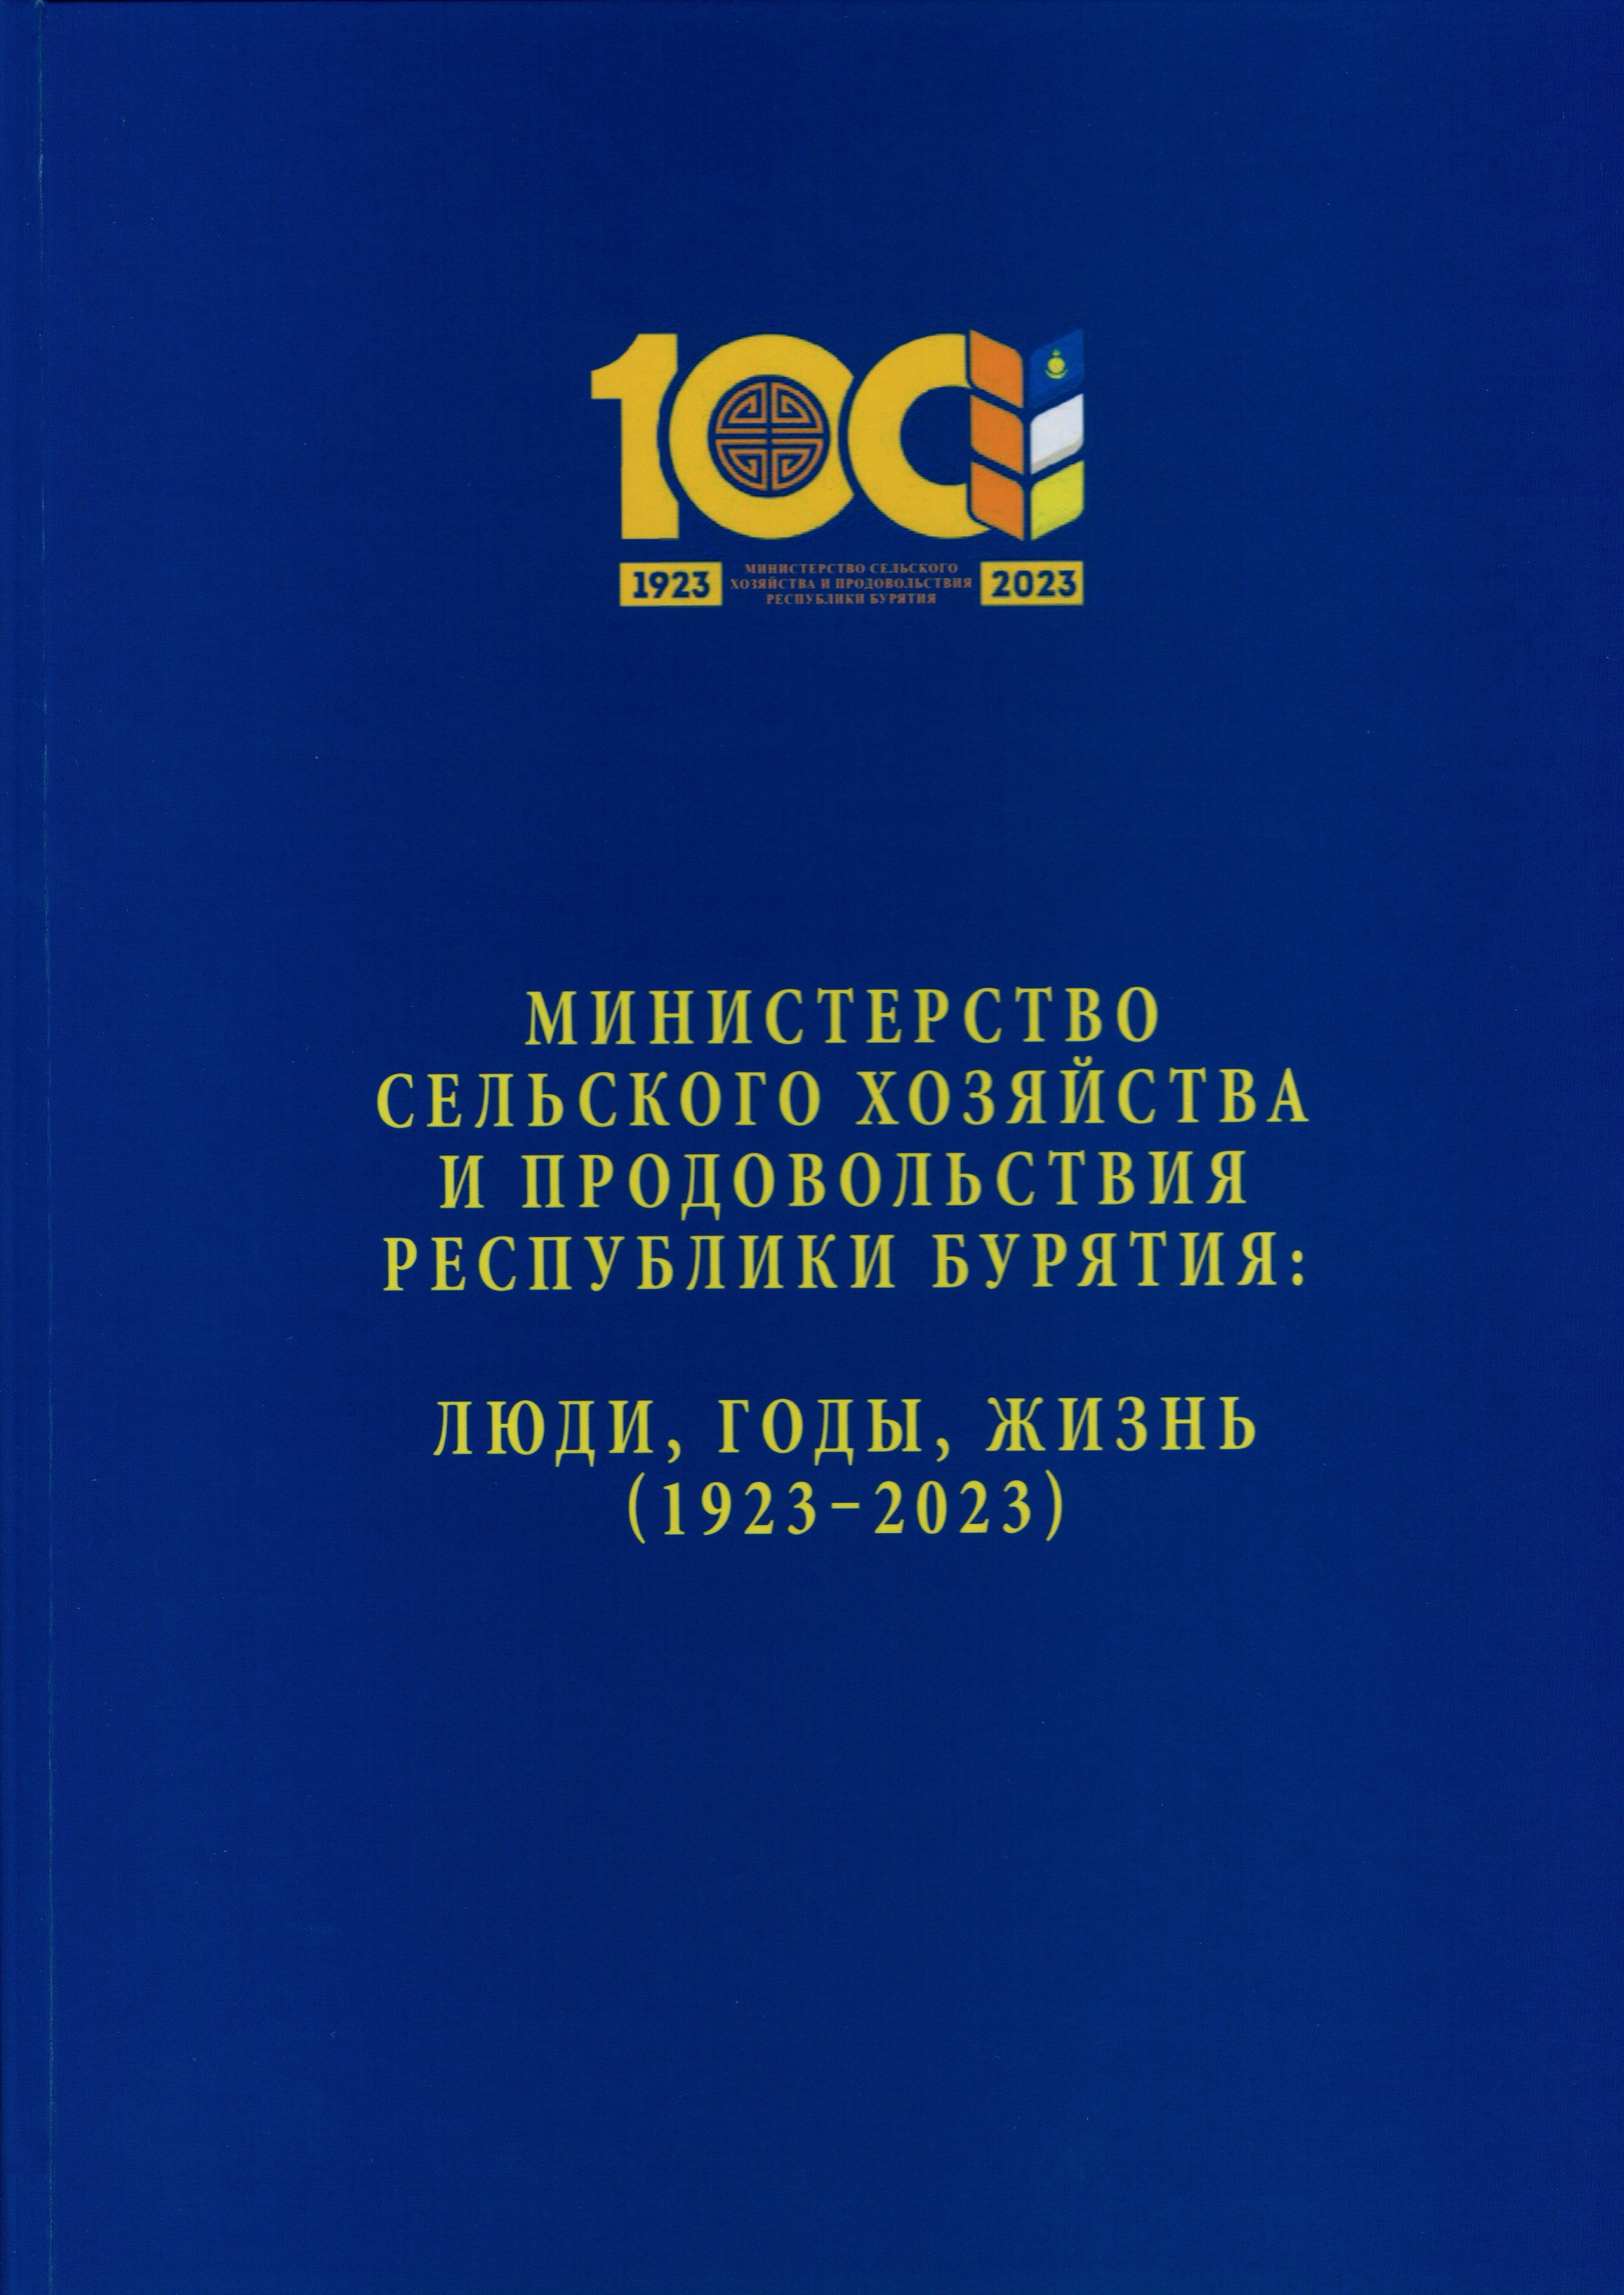 Вышла из печати книга к 100-летию Министерства  сельского хозяйства и продовольствия Республики Бурятия